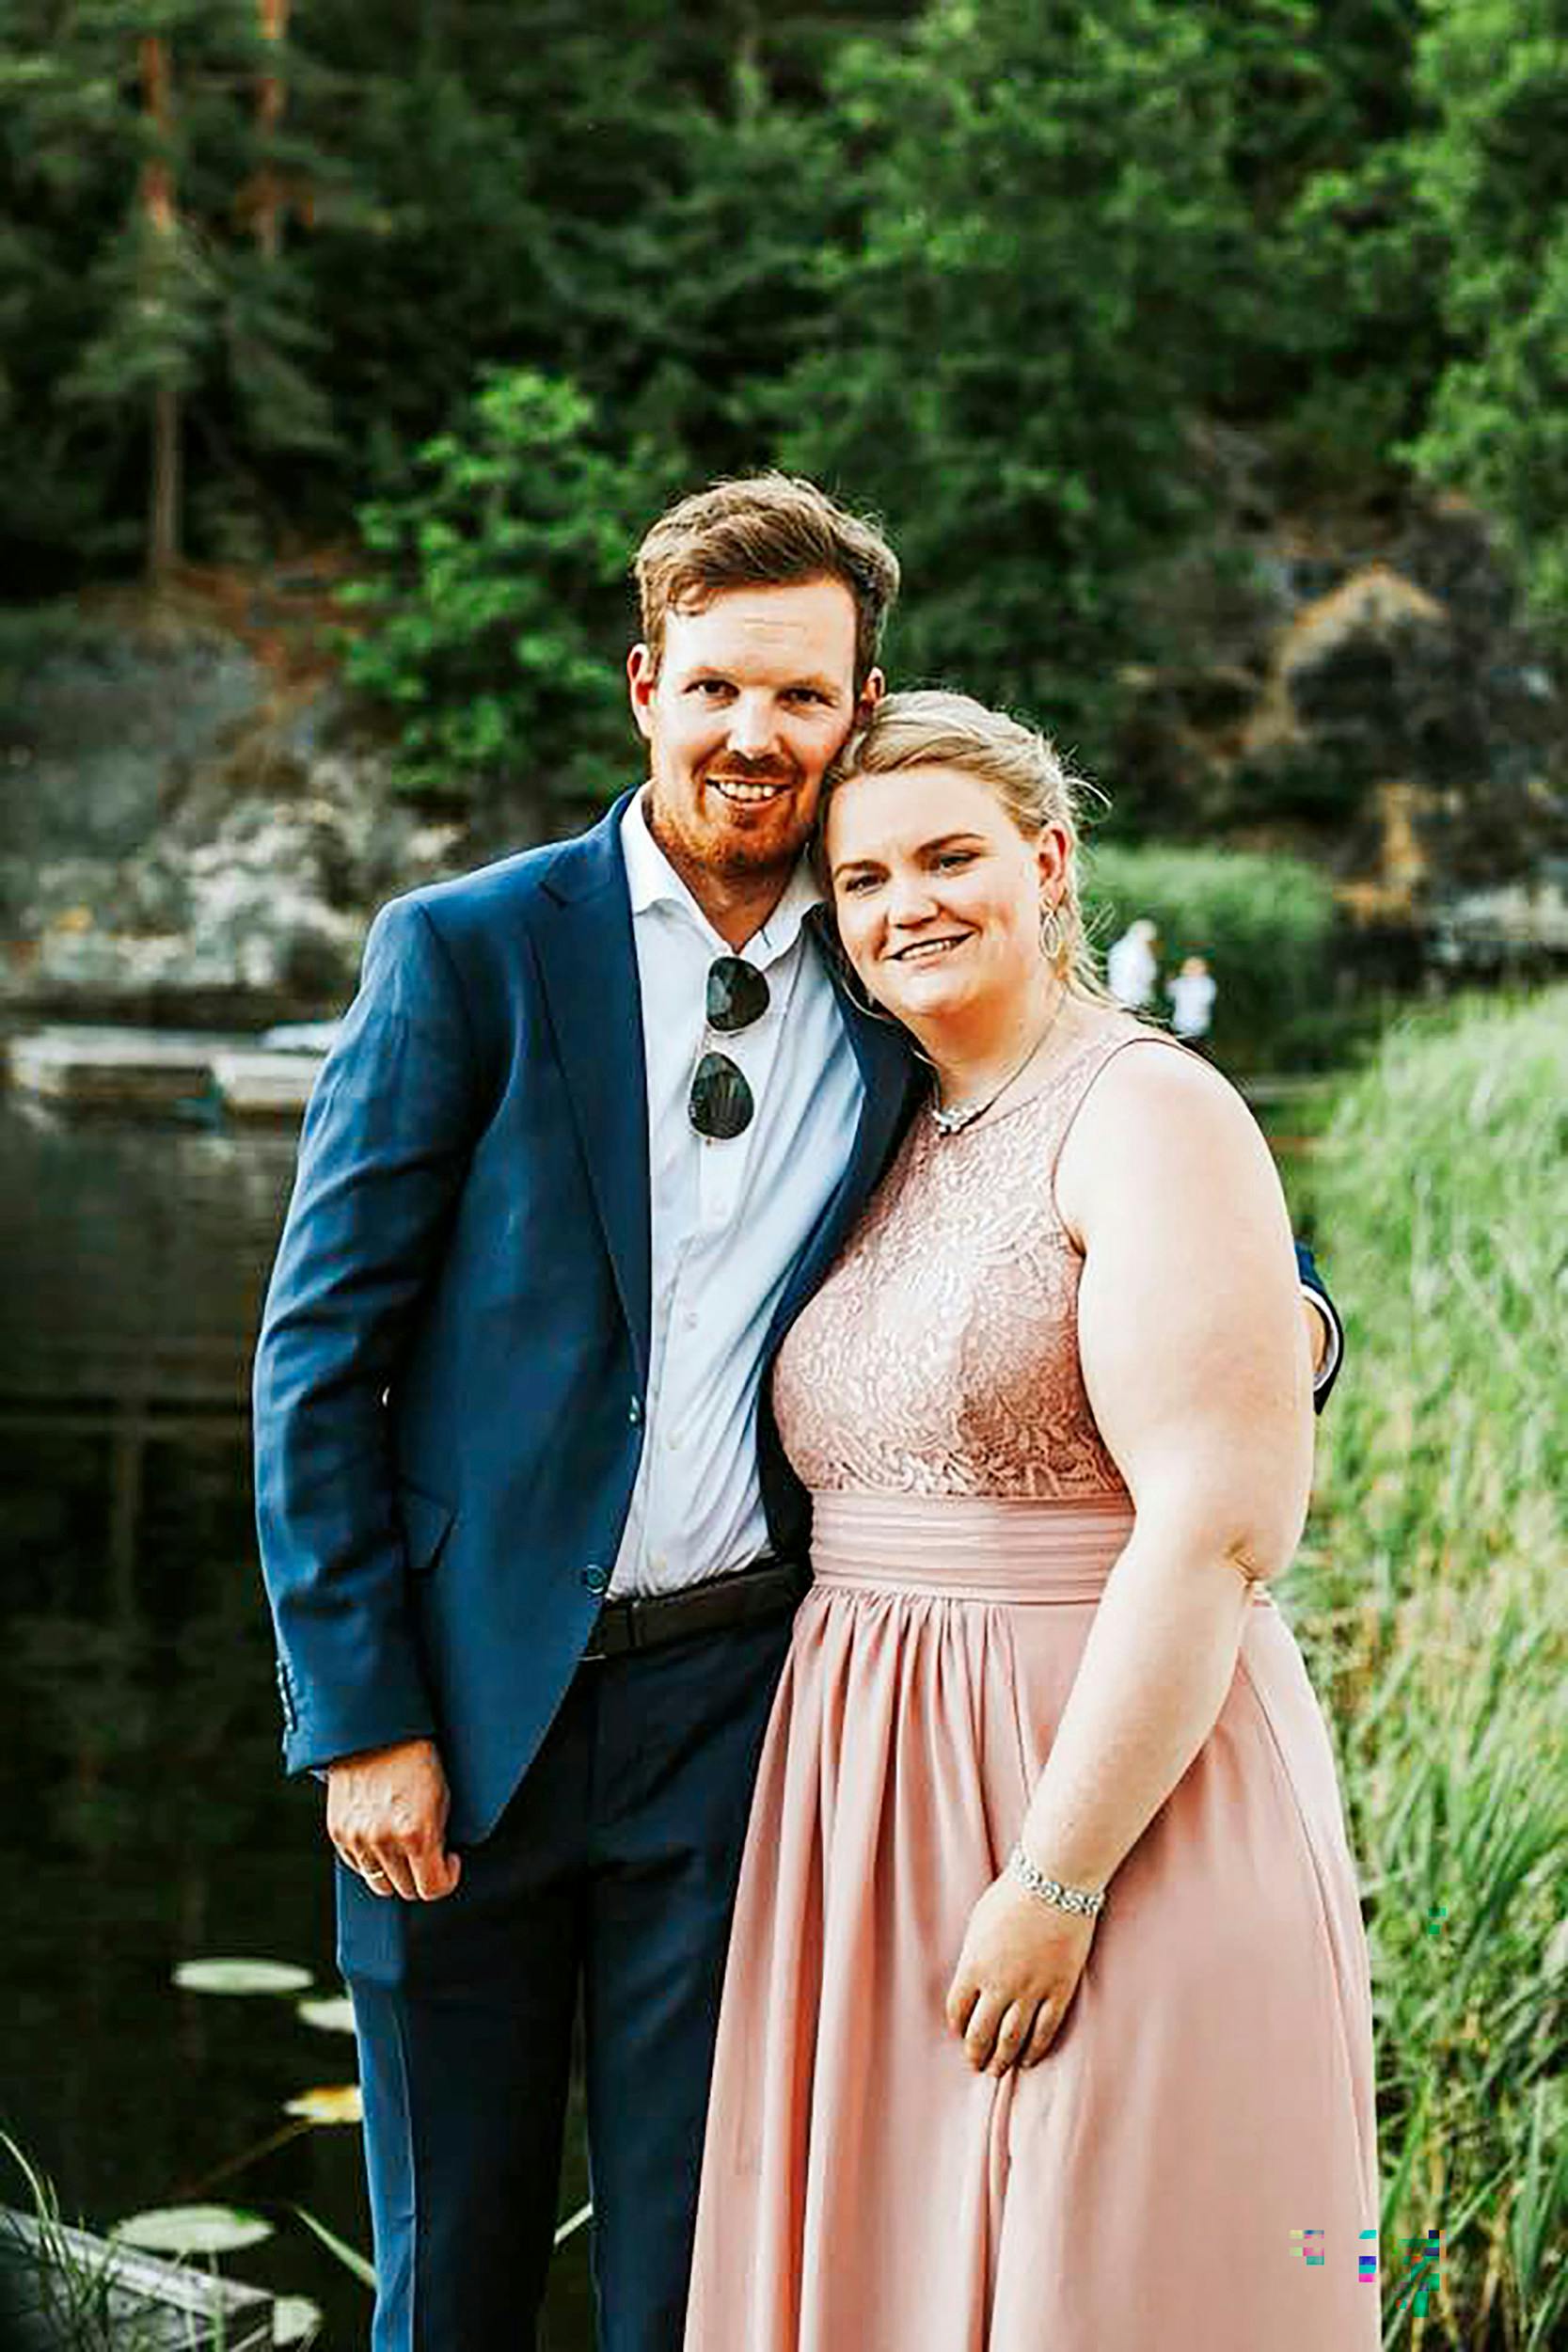 Elises vægt steg markant i forbindelse med hendes første graviditet. Her ses hun og manden Bjørn Erik til et bryllup kort efter fødslen.